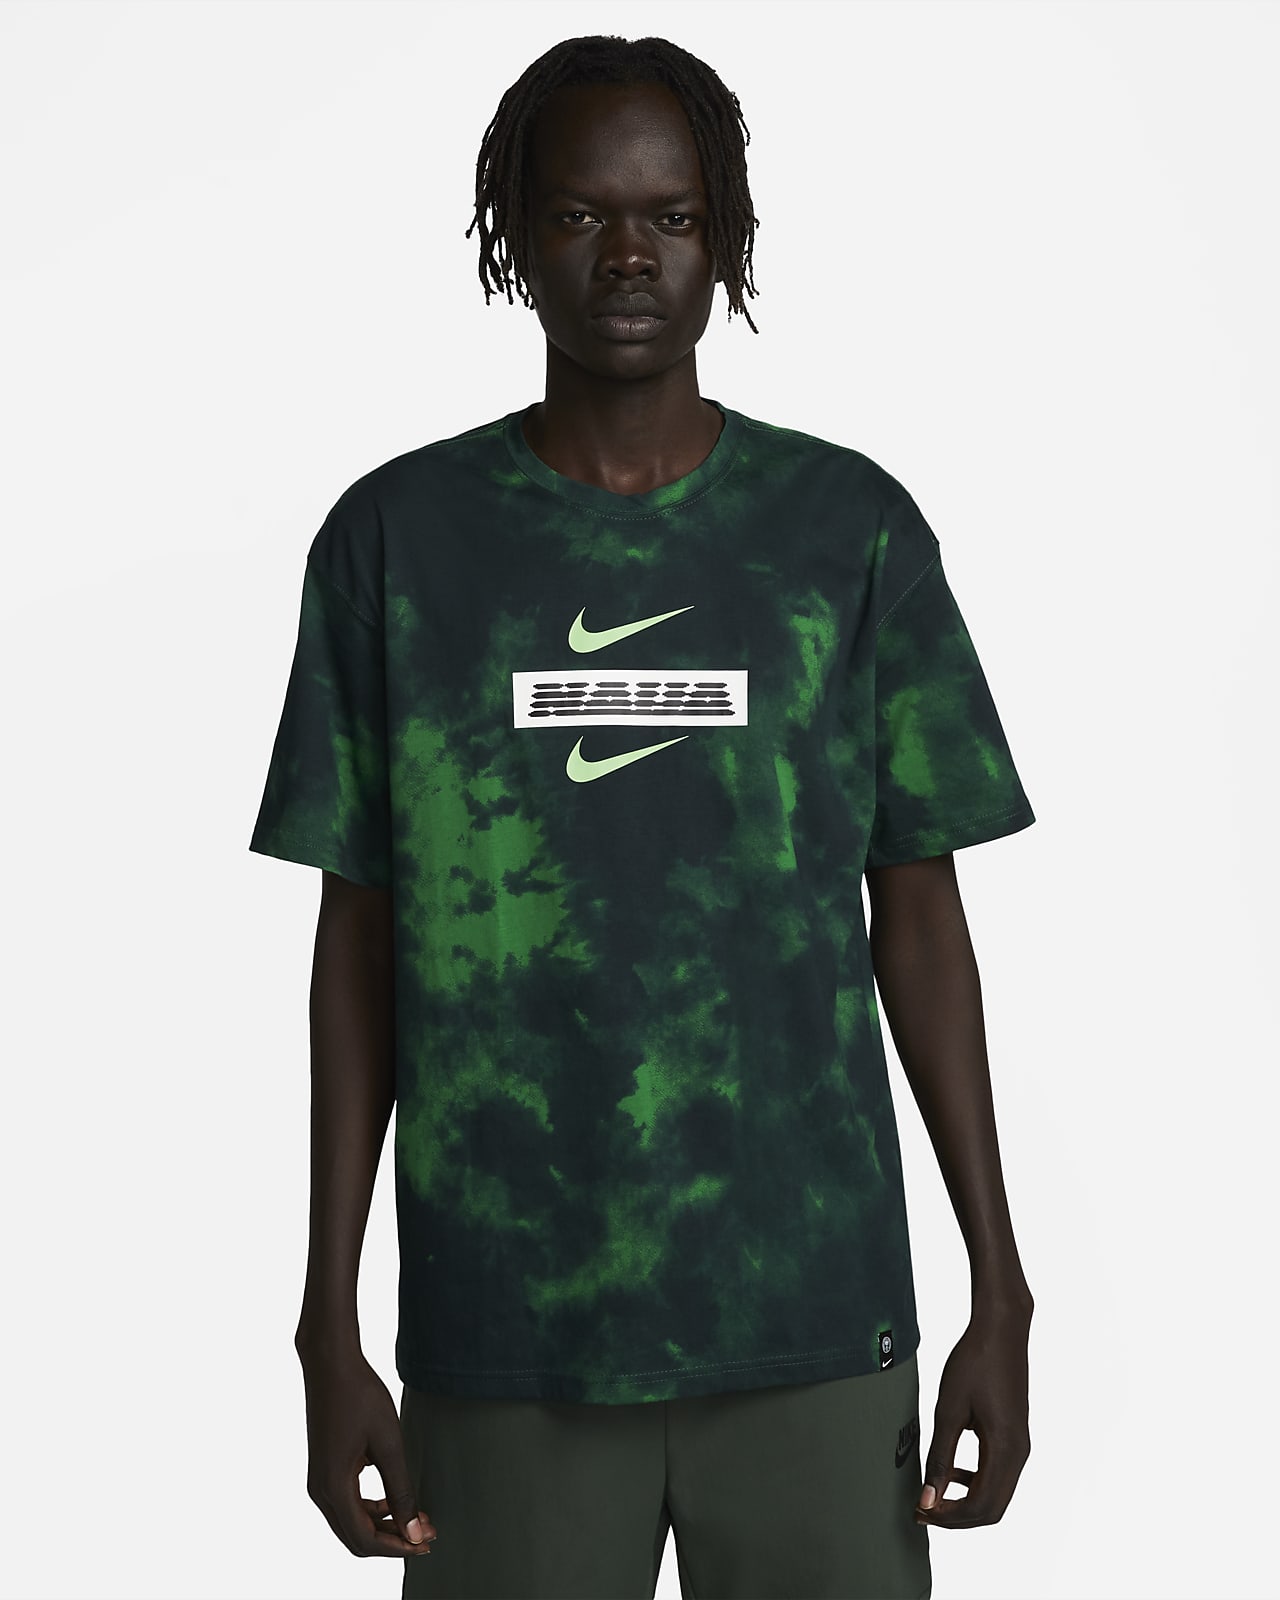 galerij schaduw Eerlijkheid Nigeria Men's Nike Ignite T-Shirt. Nike.com